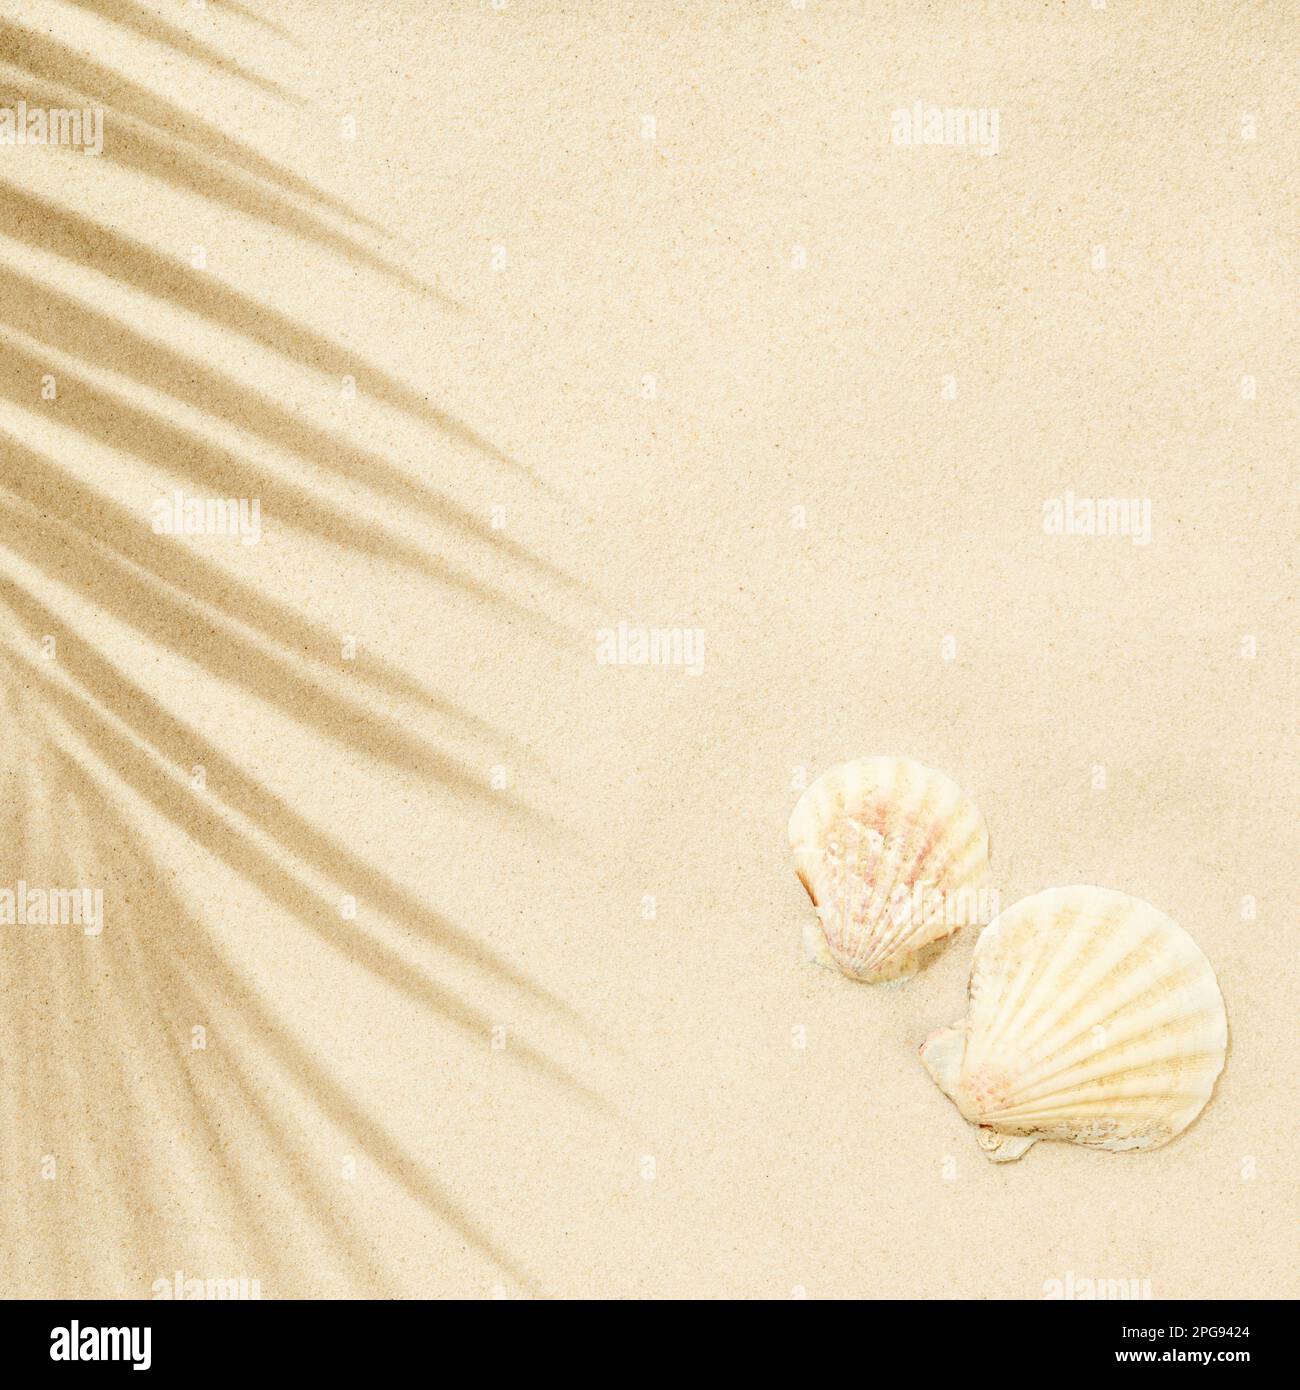 Weißer Sandstrand mit Palmenblättern und Muscheln im Schatten. Reise- und Urlaubskonzepthintergrund. Draufsicht, flach liegend Stockfoto